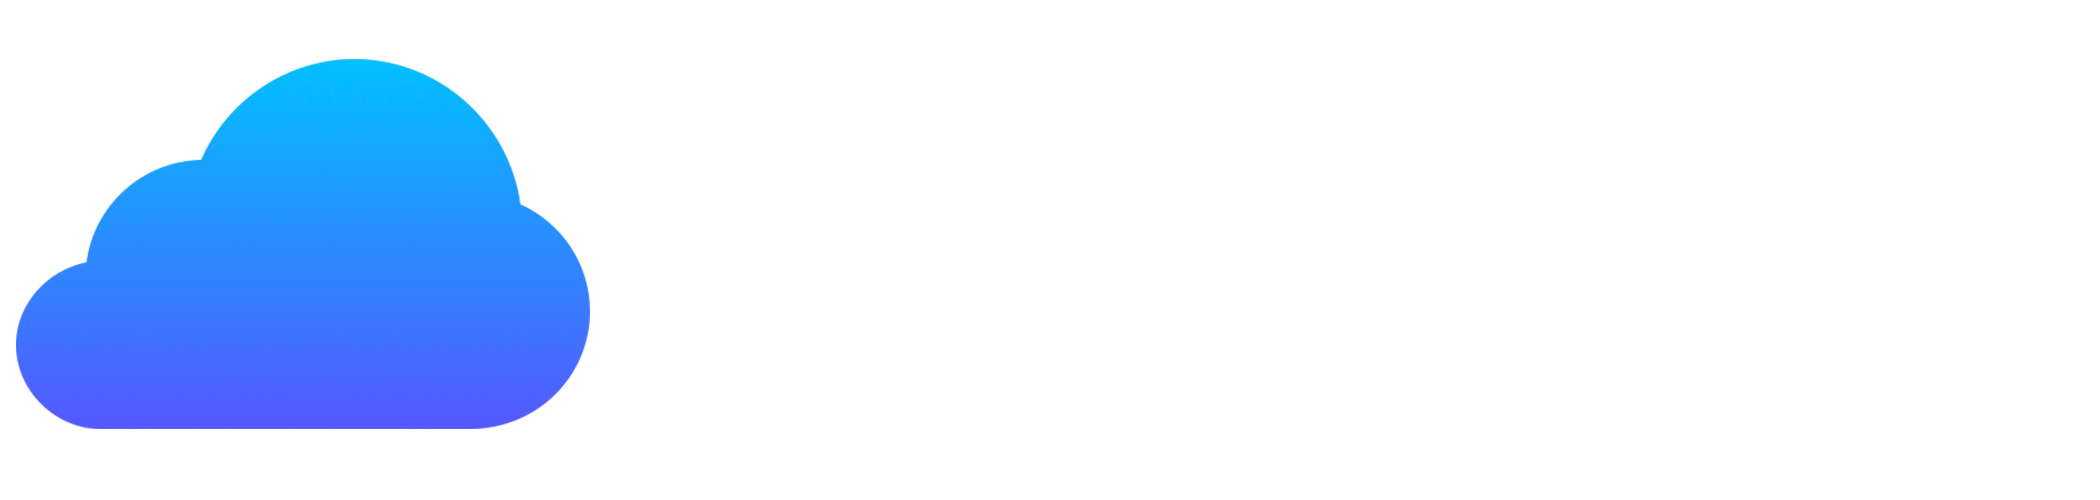 Eghost.net